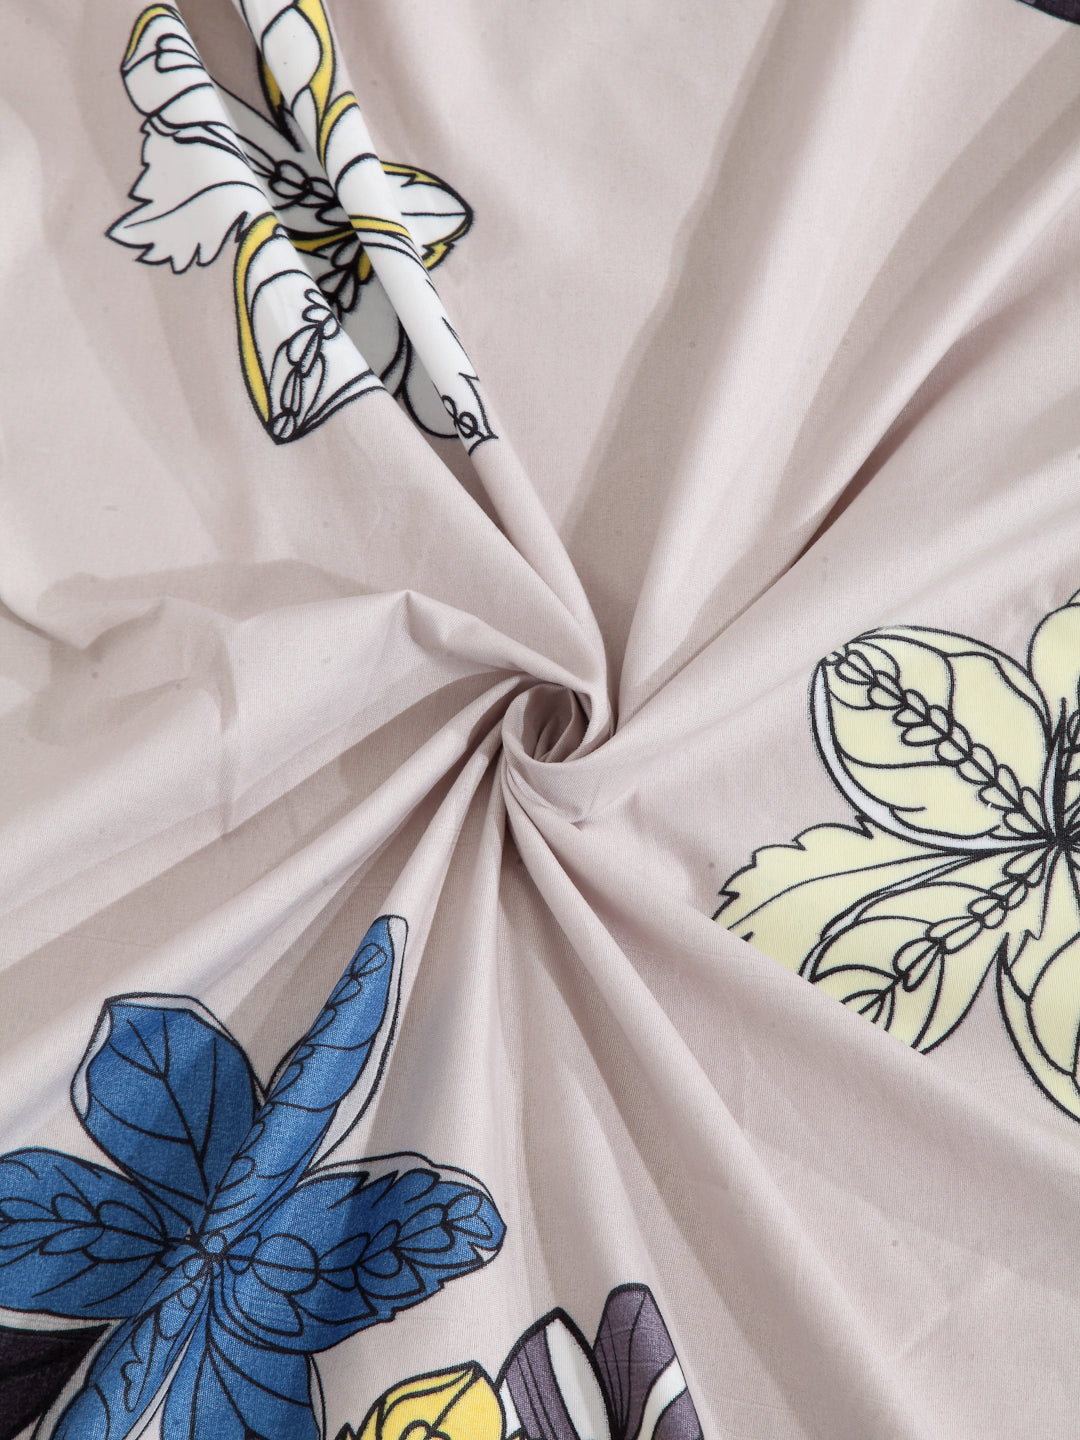 Arrabi Beige Floral TC Cotton Blend Single Size Bedsheet with 1 Pillow Cover (215 x 150 cm)